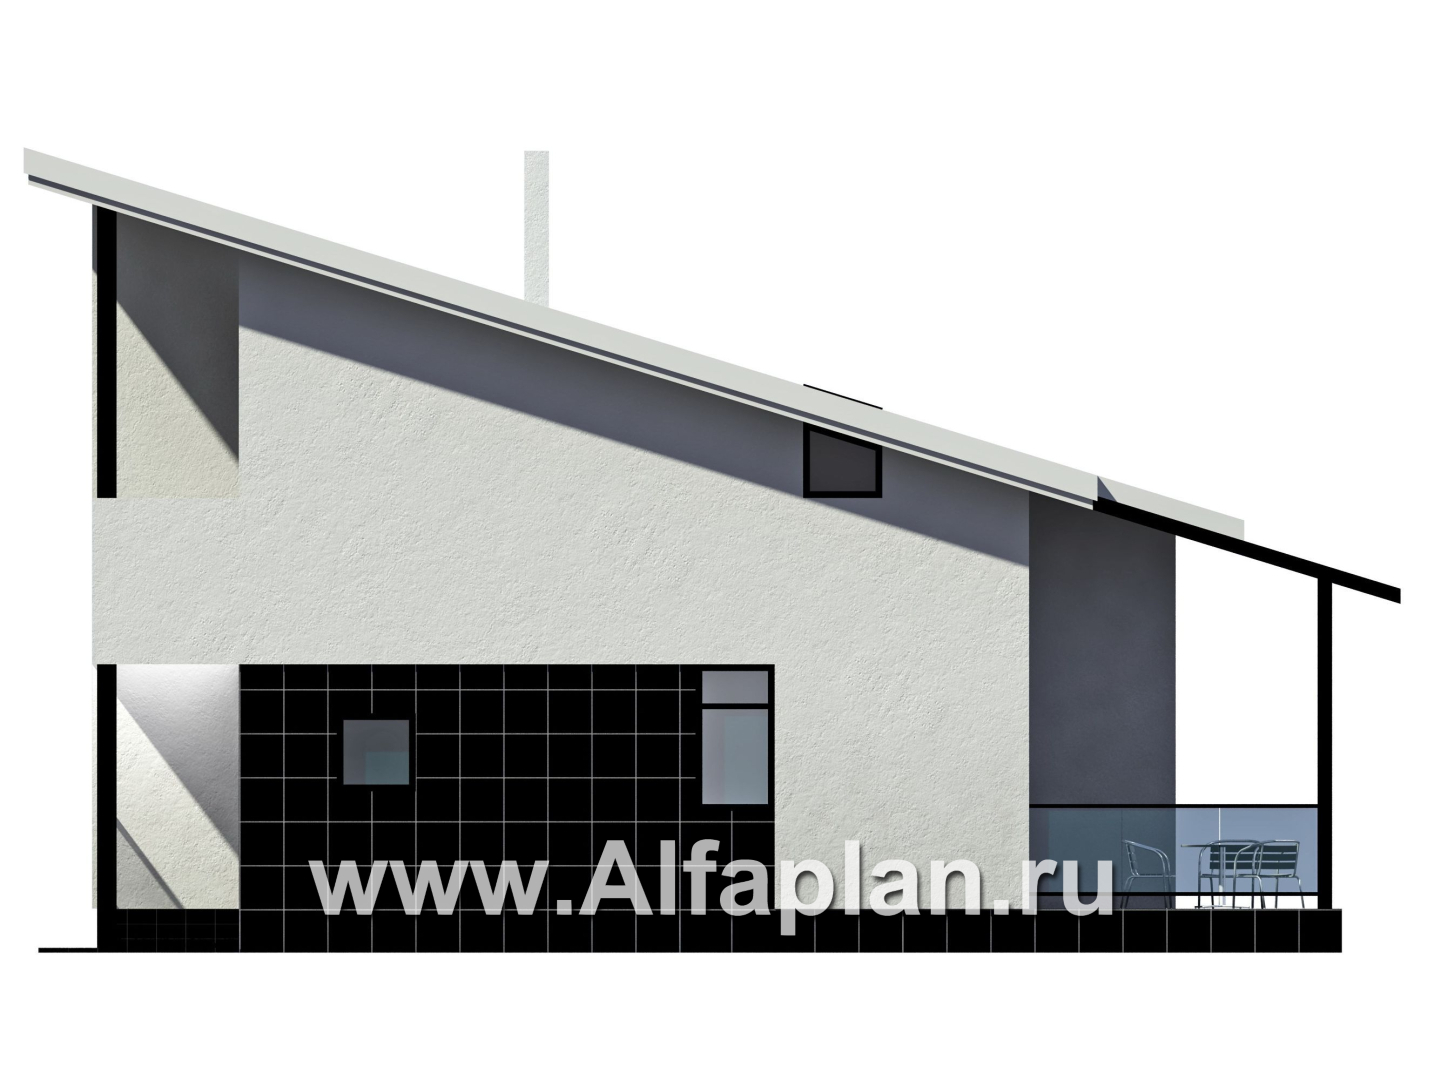 Проект дома с мансардой, планировка со вторым светом в гостиной, с террасой и односкатной крышей, в стиле минимализм - фасад дома